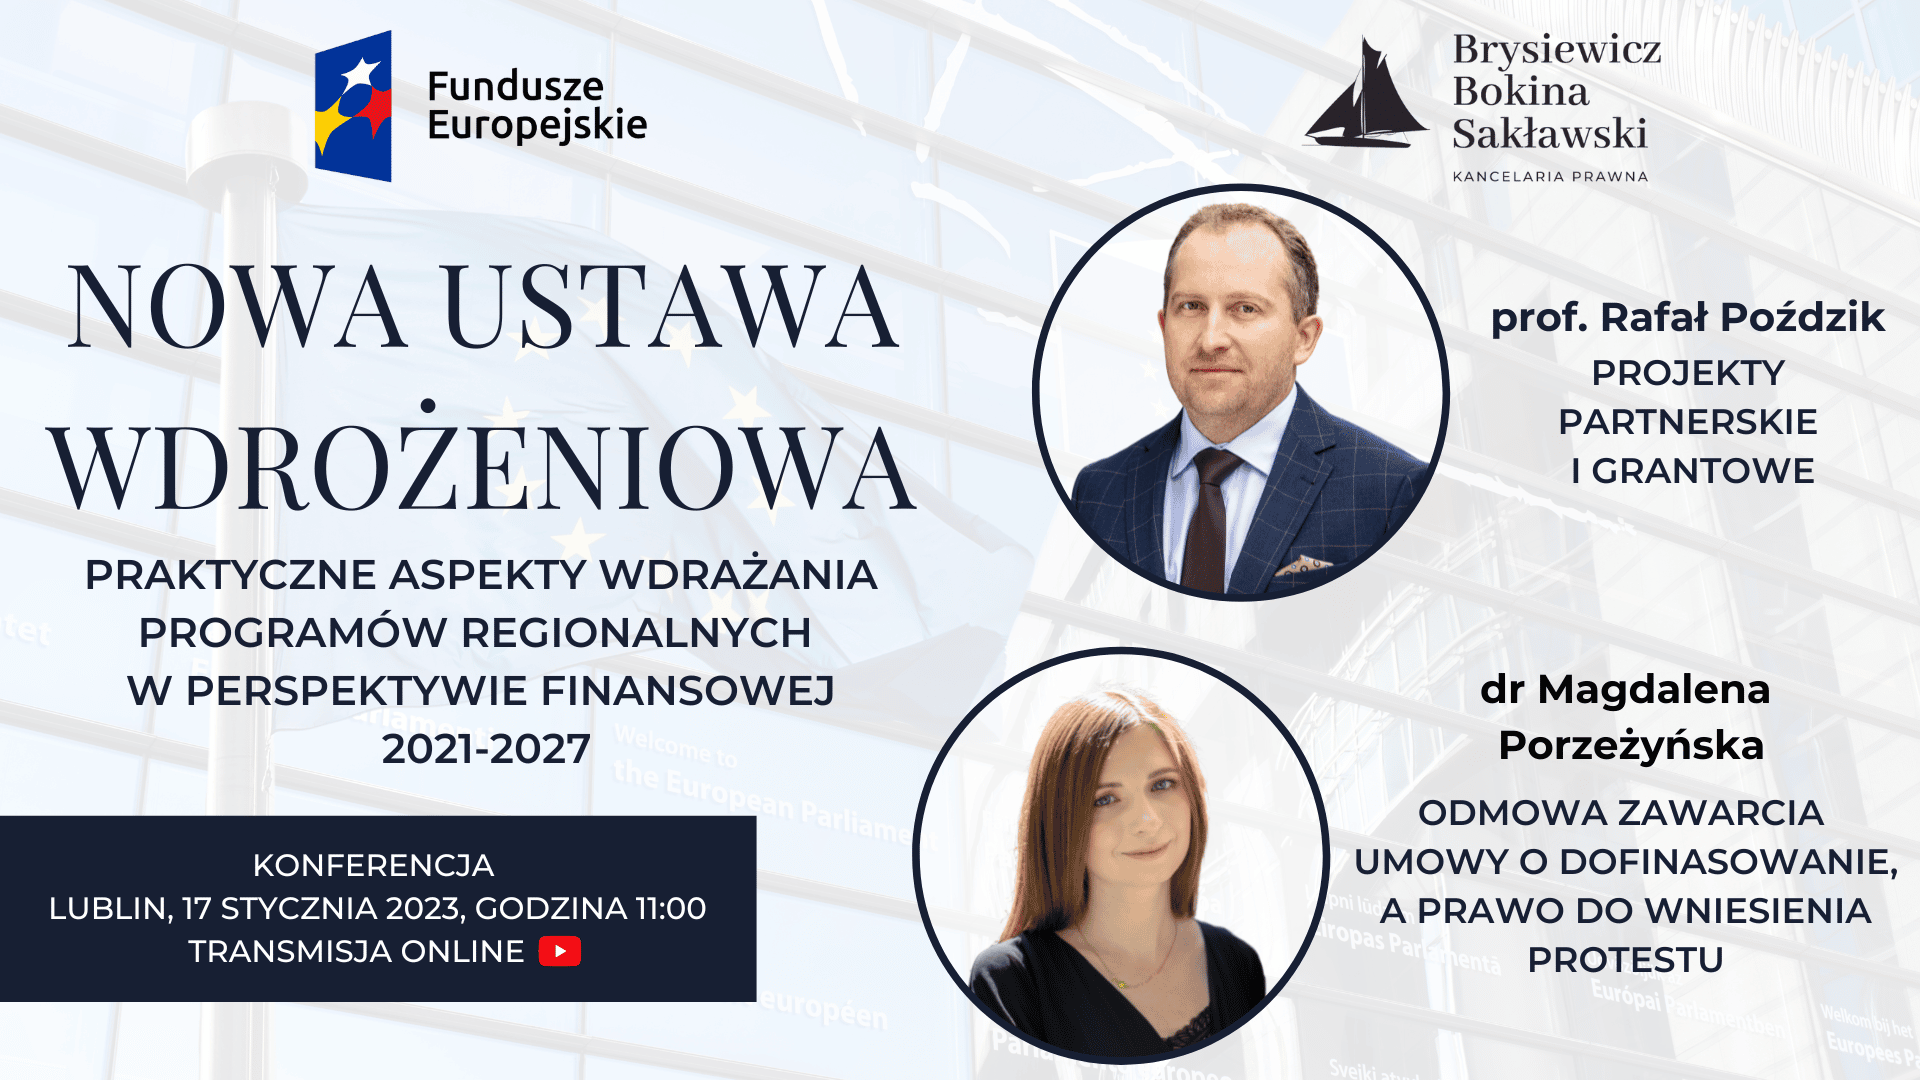 Konferencja w Lublinie Nowa ustawa wdrożeniowa – praktyczne aspekty wdrażania programów regionalnych w perspektywie finansowej 2021-2027